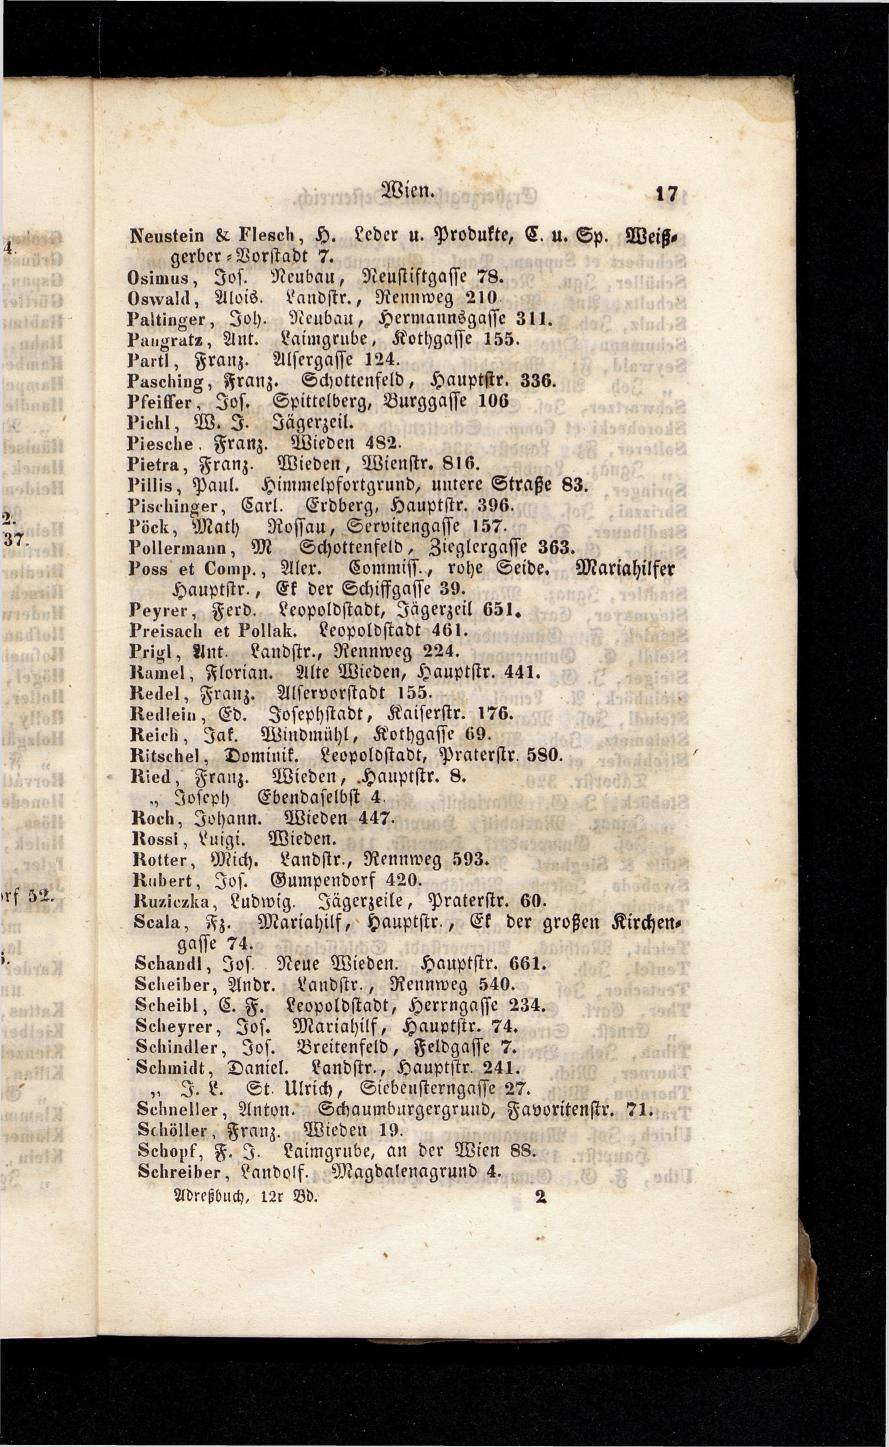 Grosses Adressbuch der Kaufleute. No. 13. Oesterreich ober u. unter der Enns 1844 - Seite 21